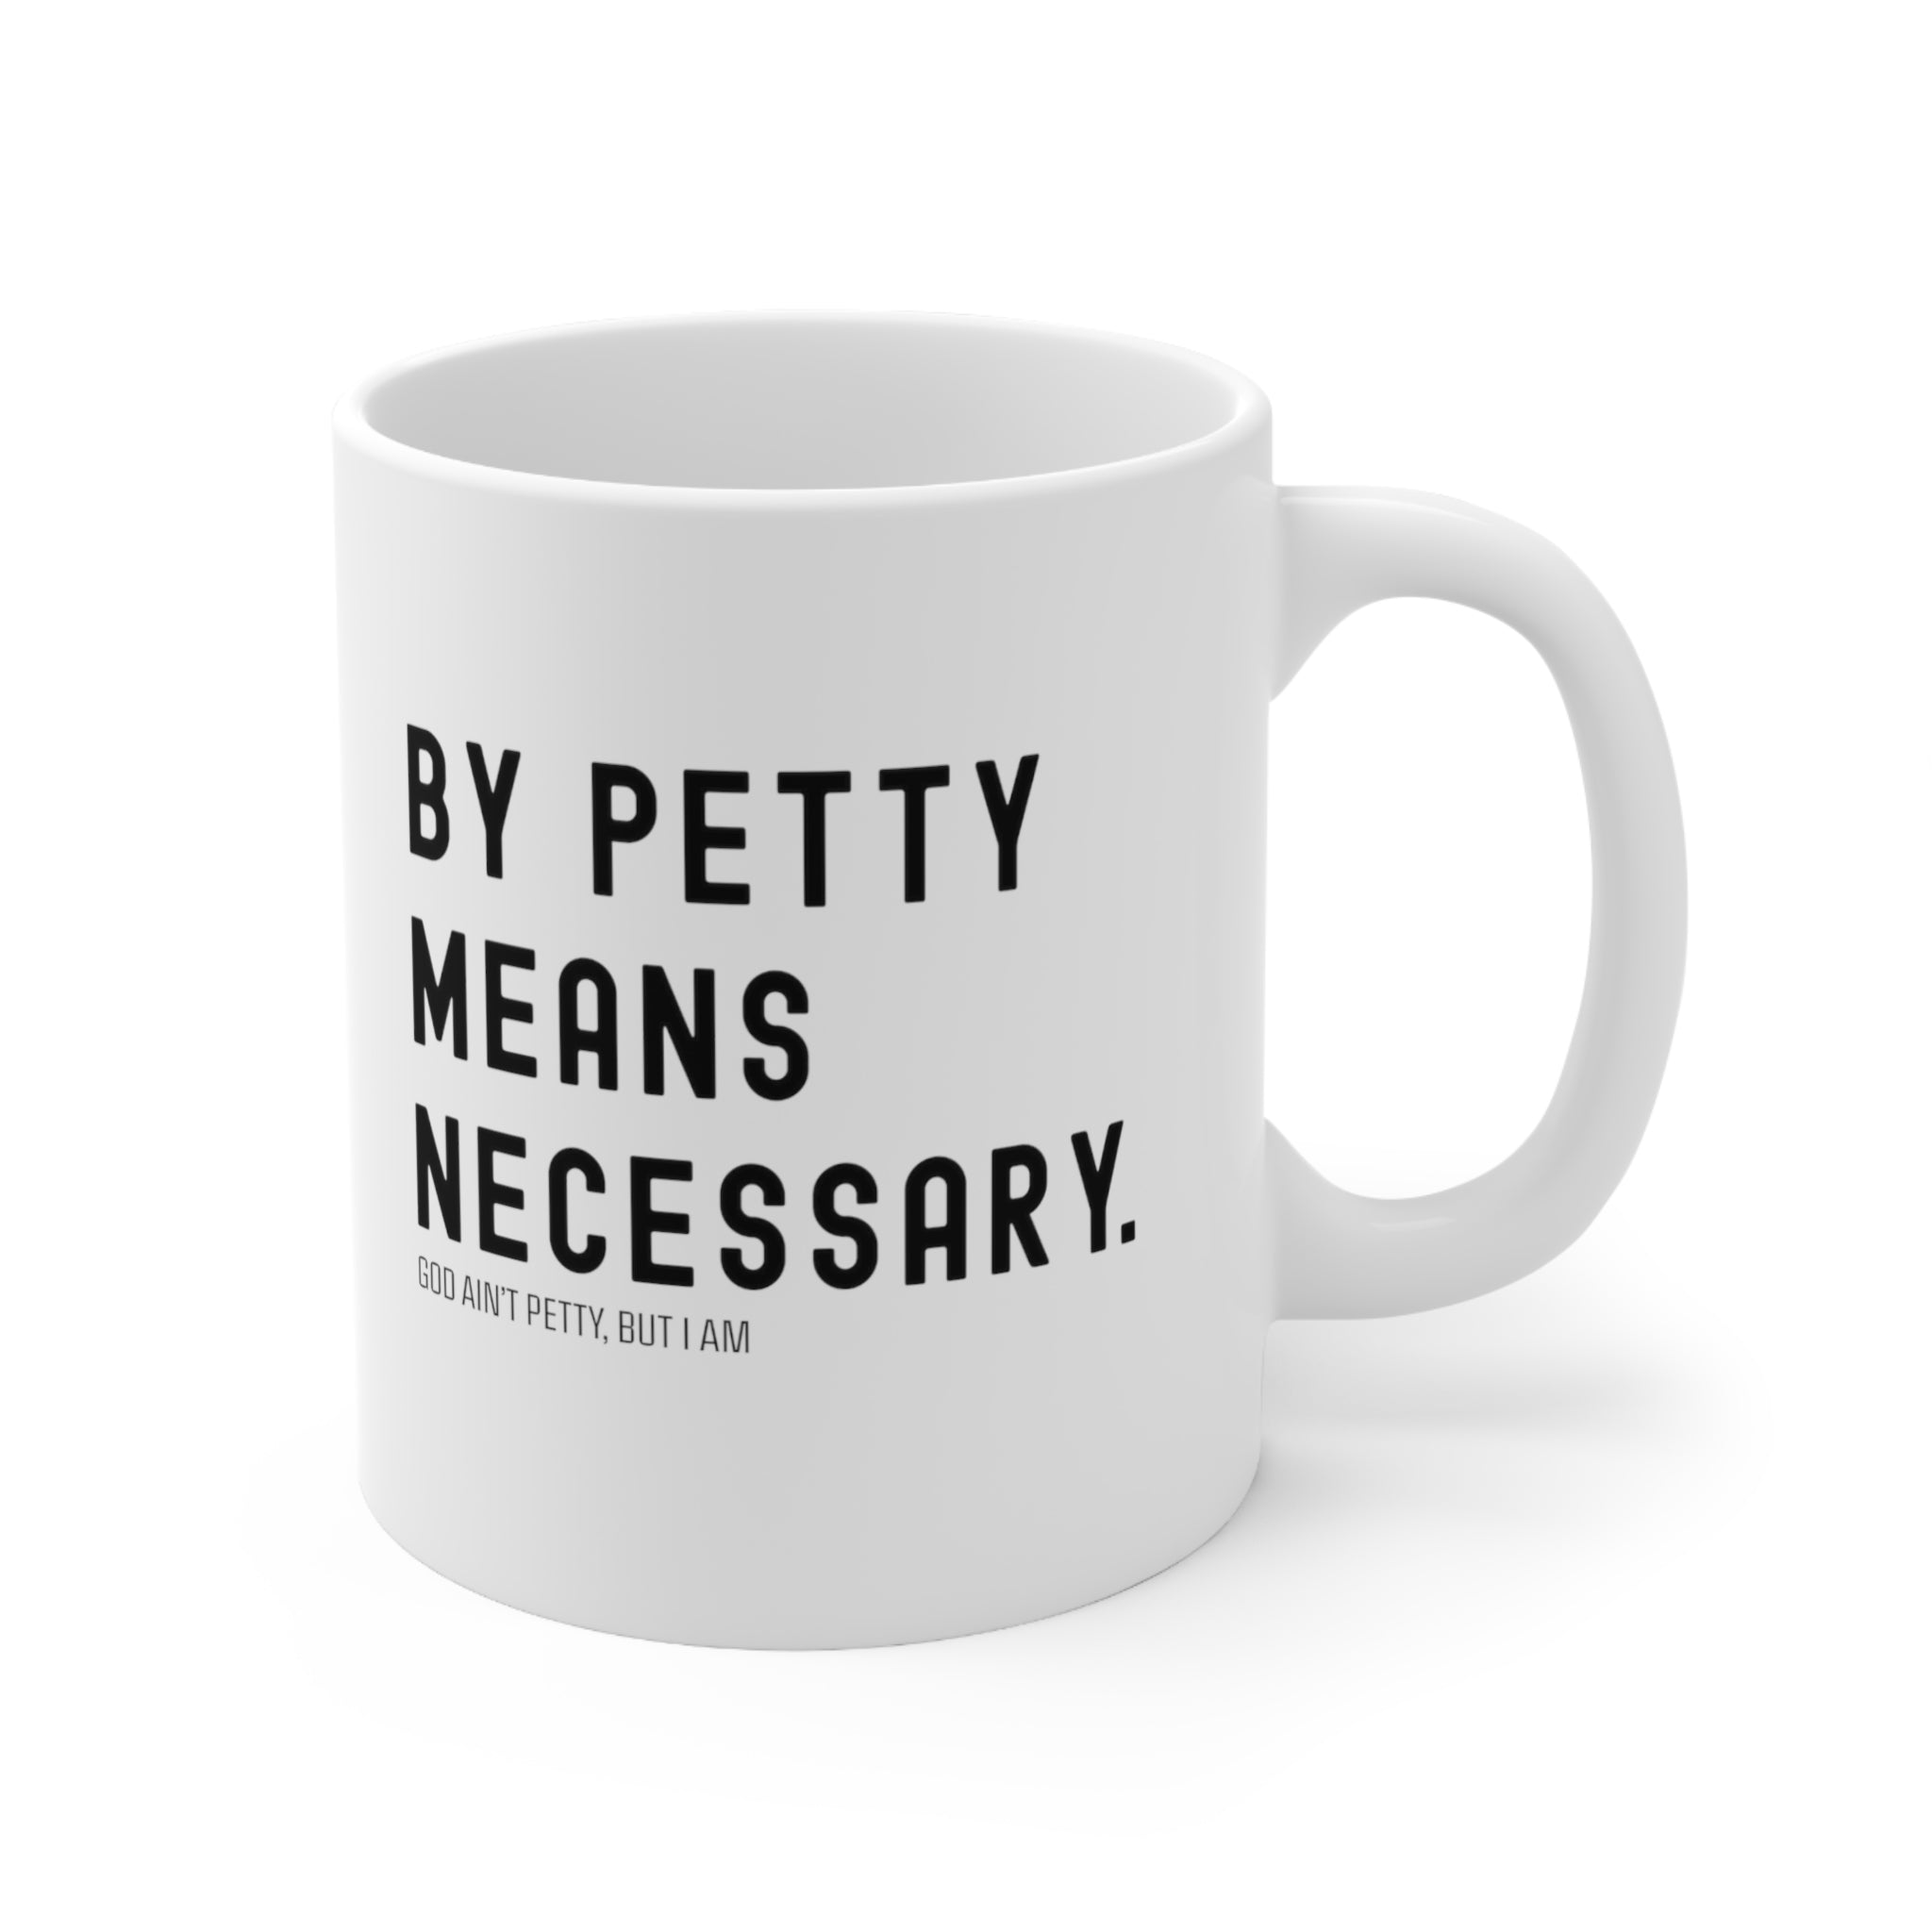 By Petty means necessary Mug 11oz (White/Black)-Mug-The Original God Ain't Petty But I Am